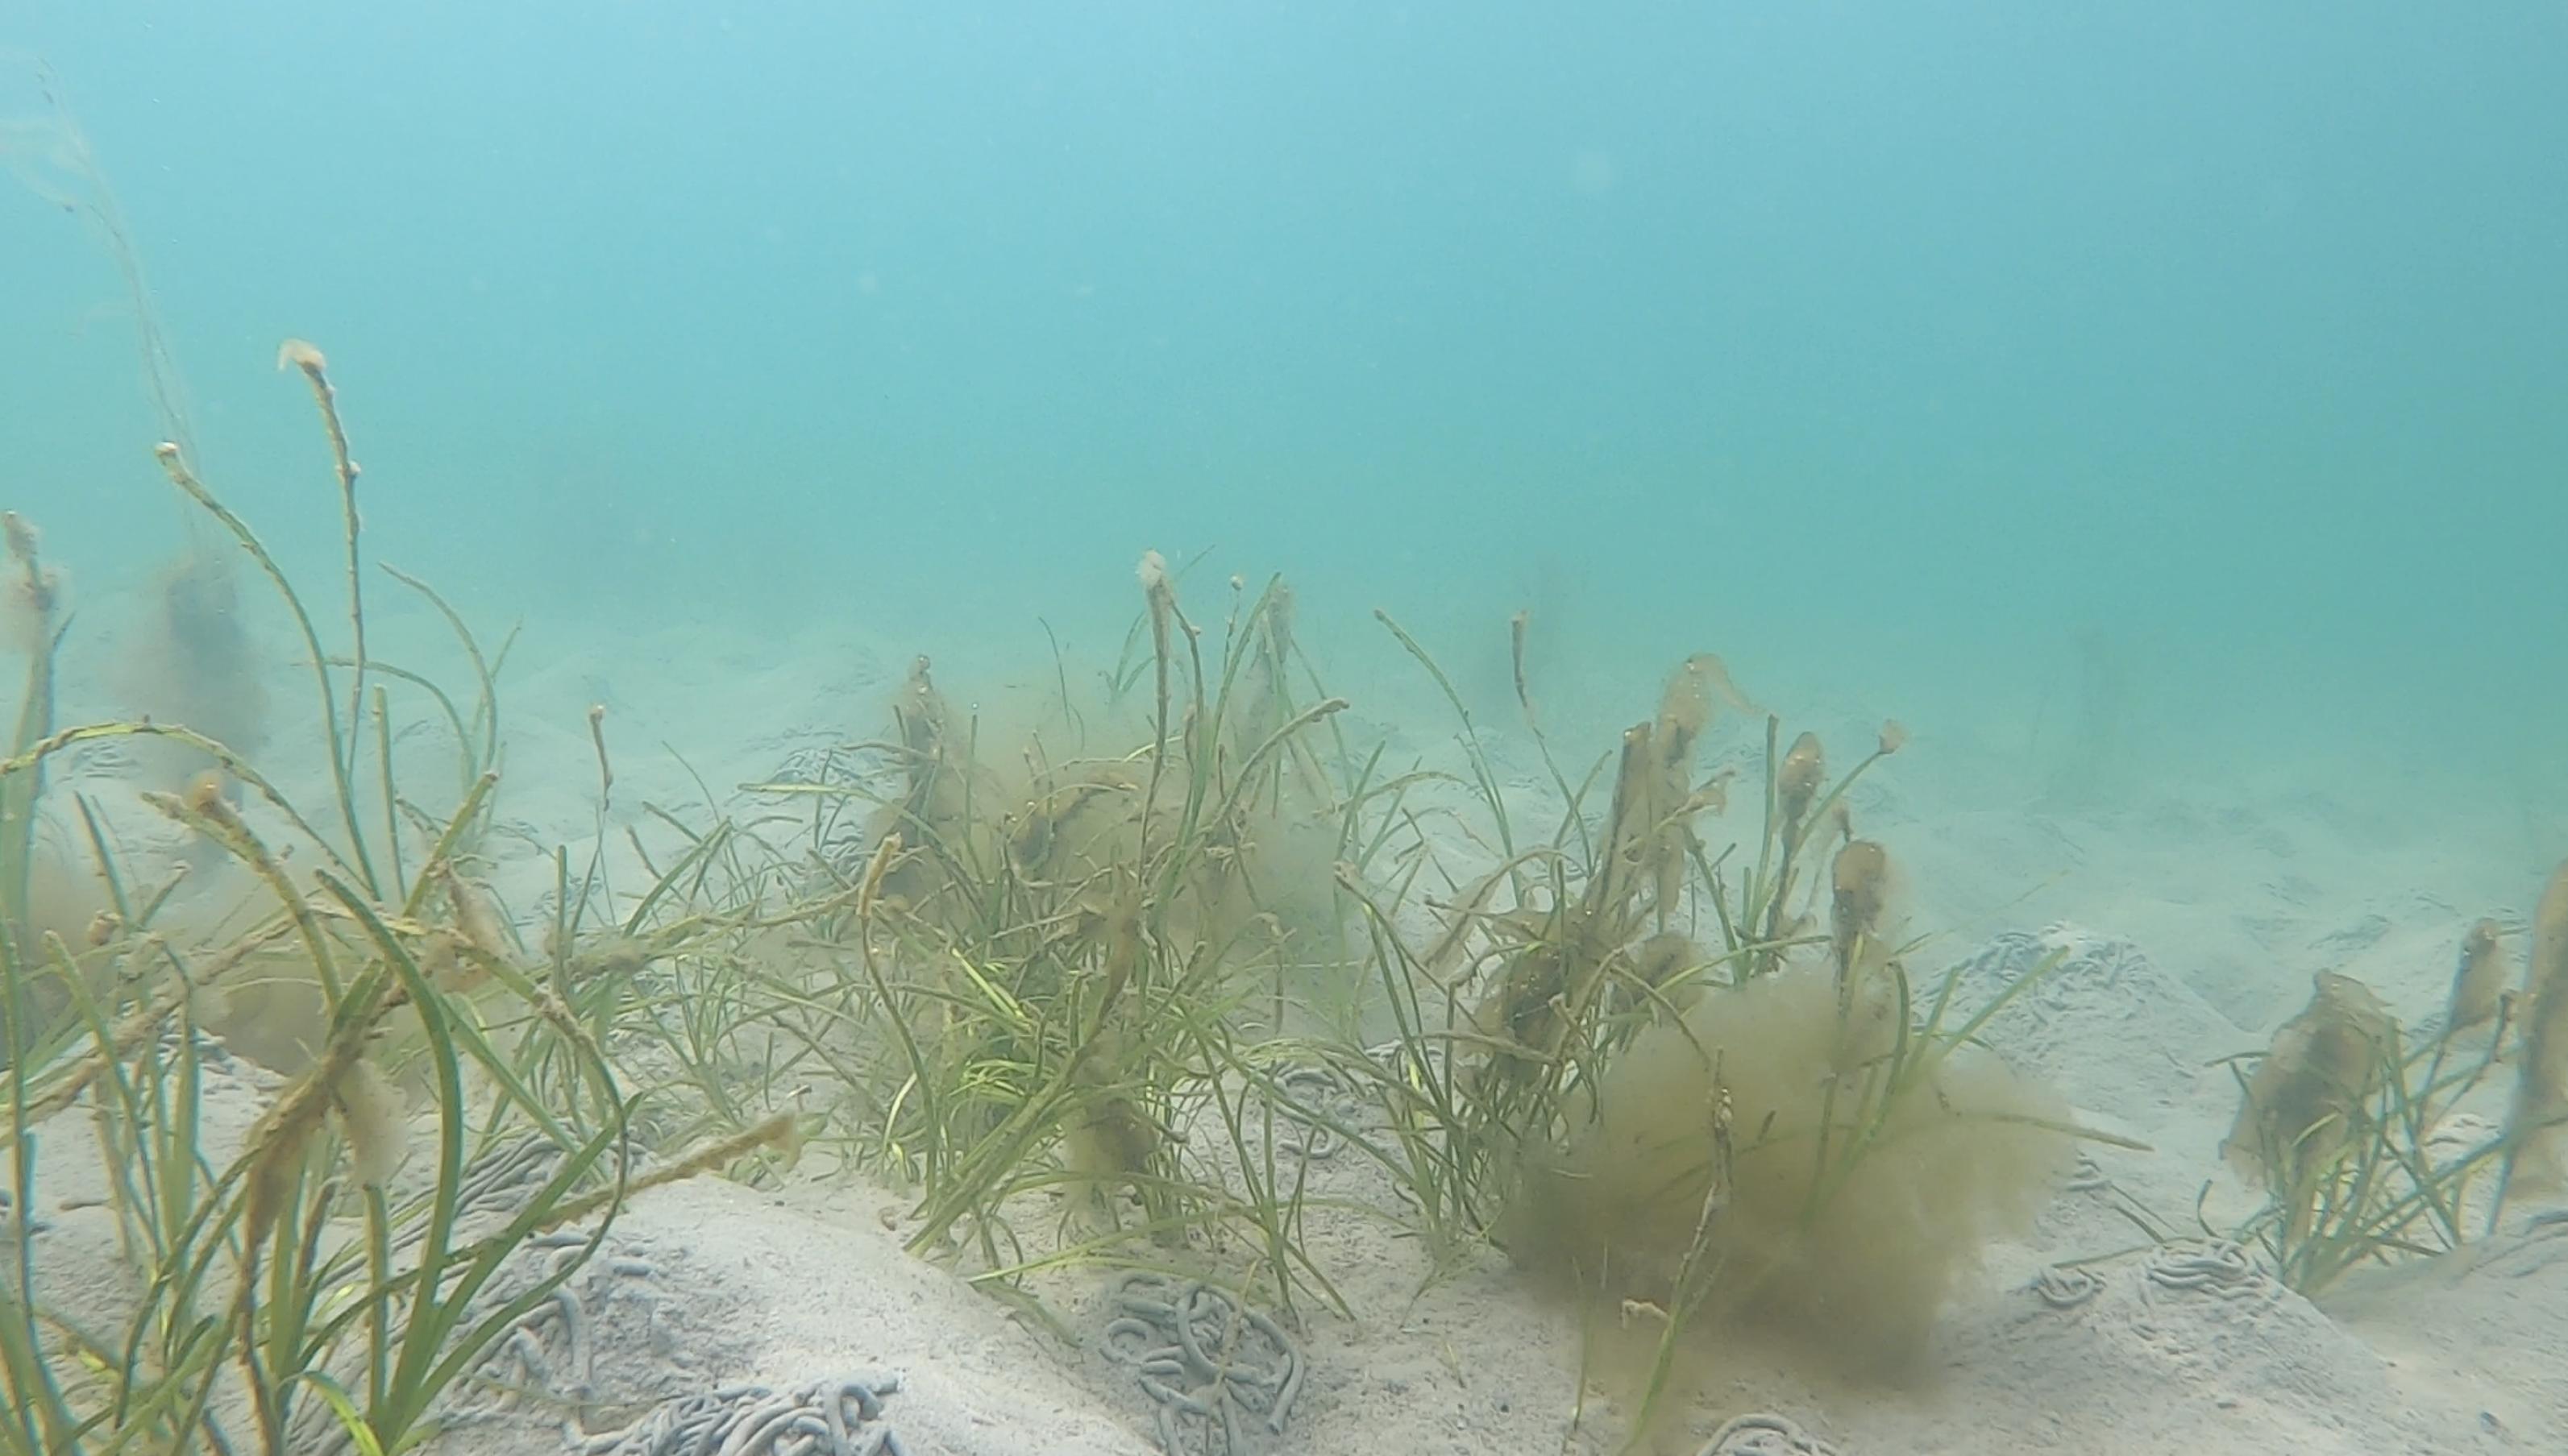 Seegraswiese in türkisem Wasser. Auf dem Sandboden sind Häufchen von Wattwürmern zu sehen.